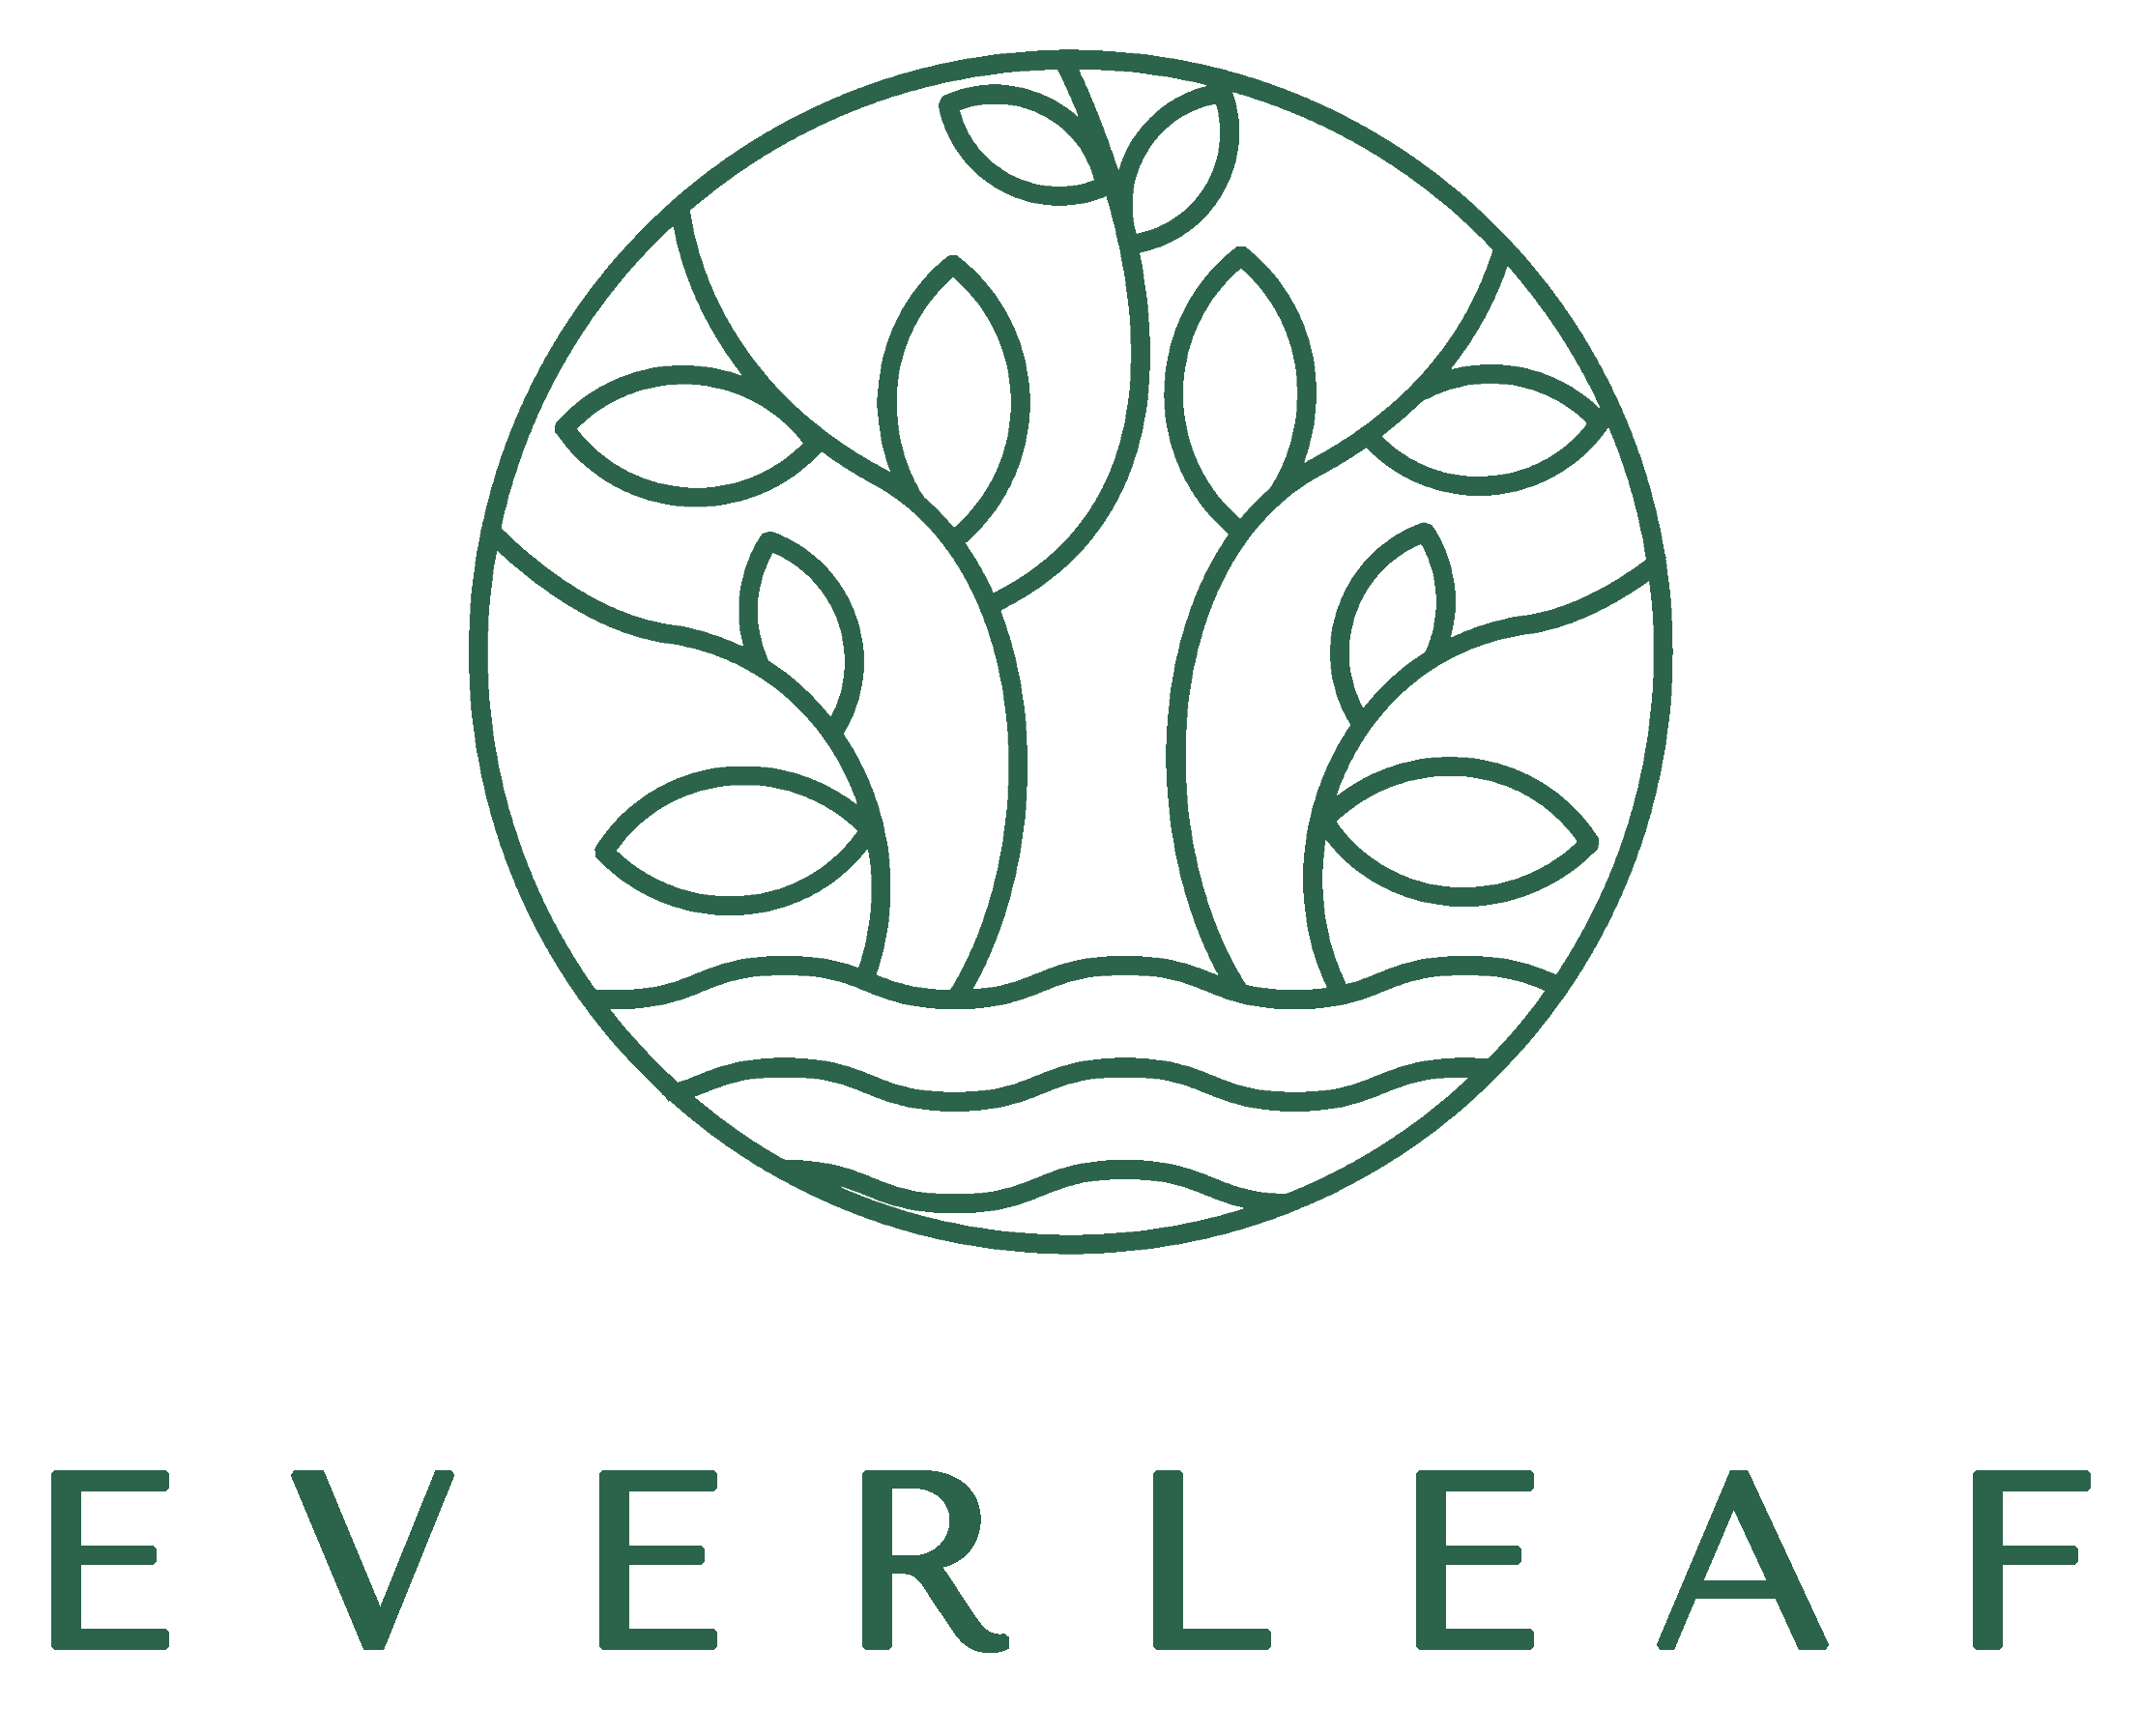 Everleaf Logo grün